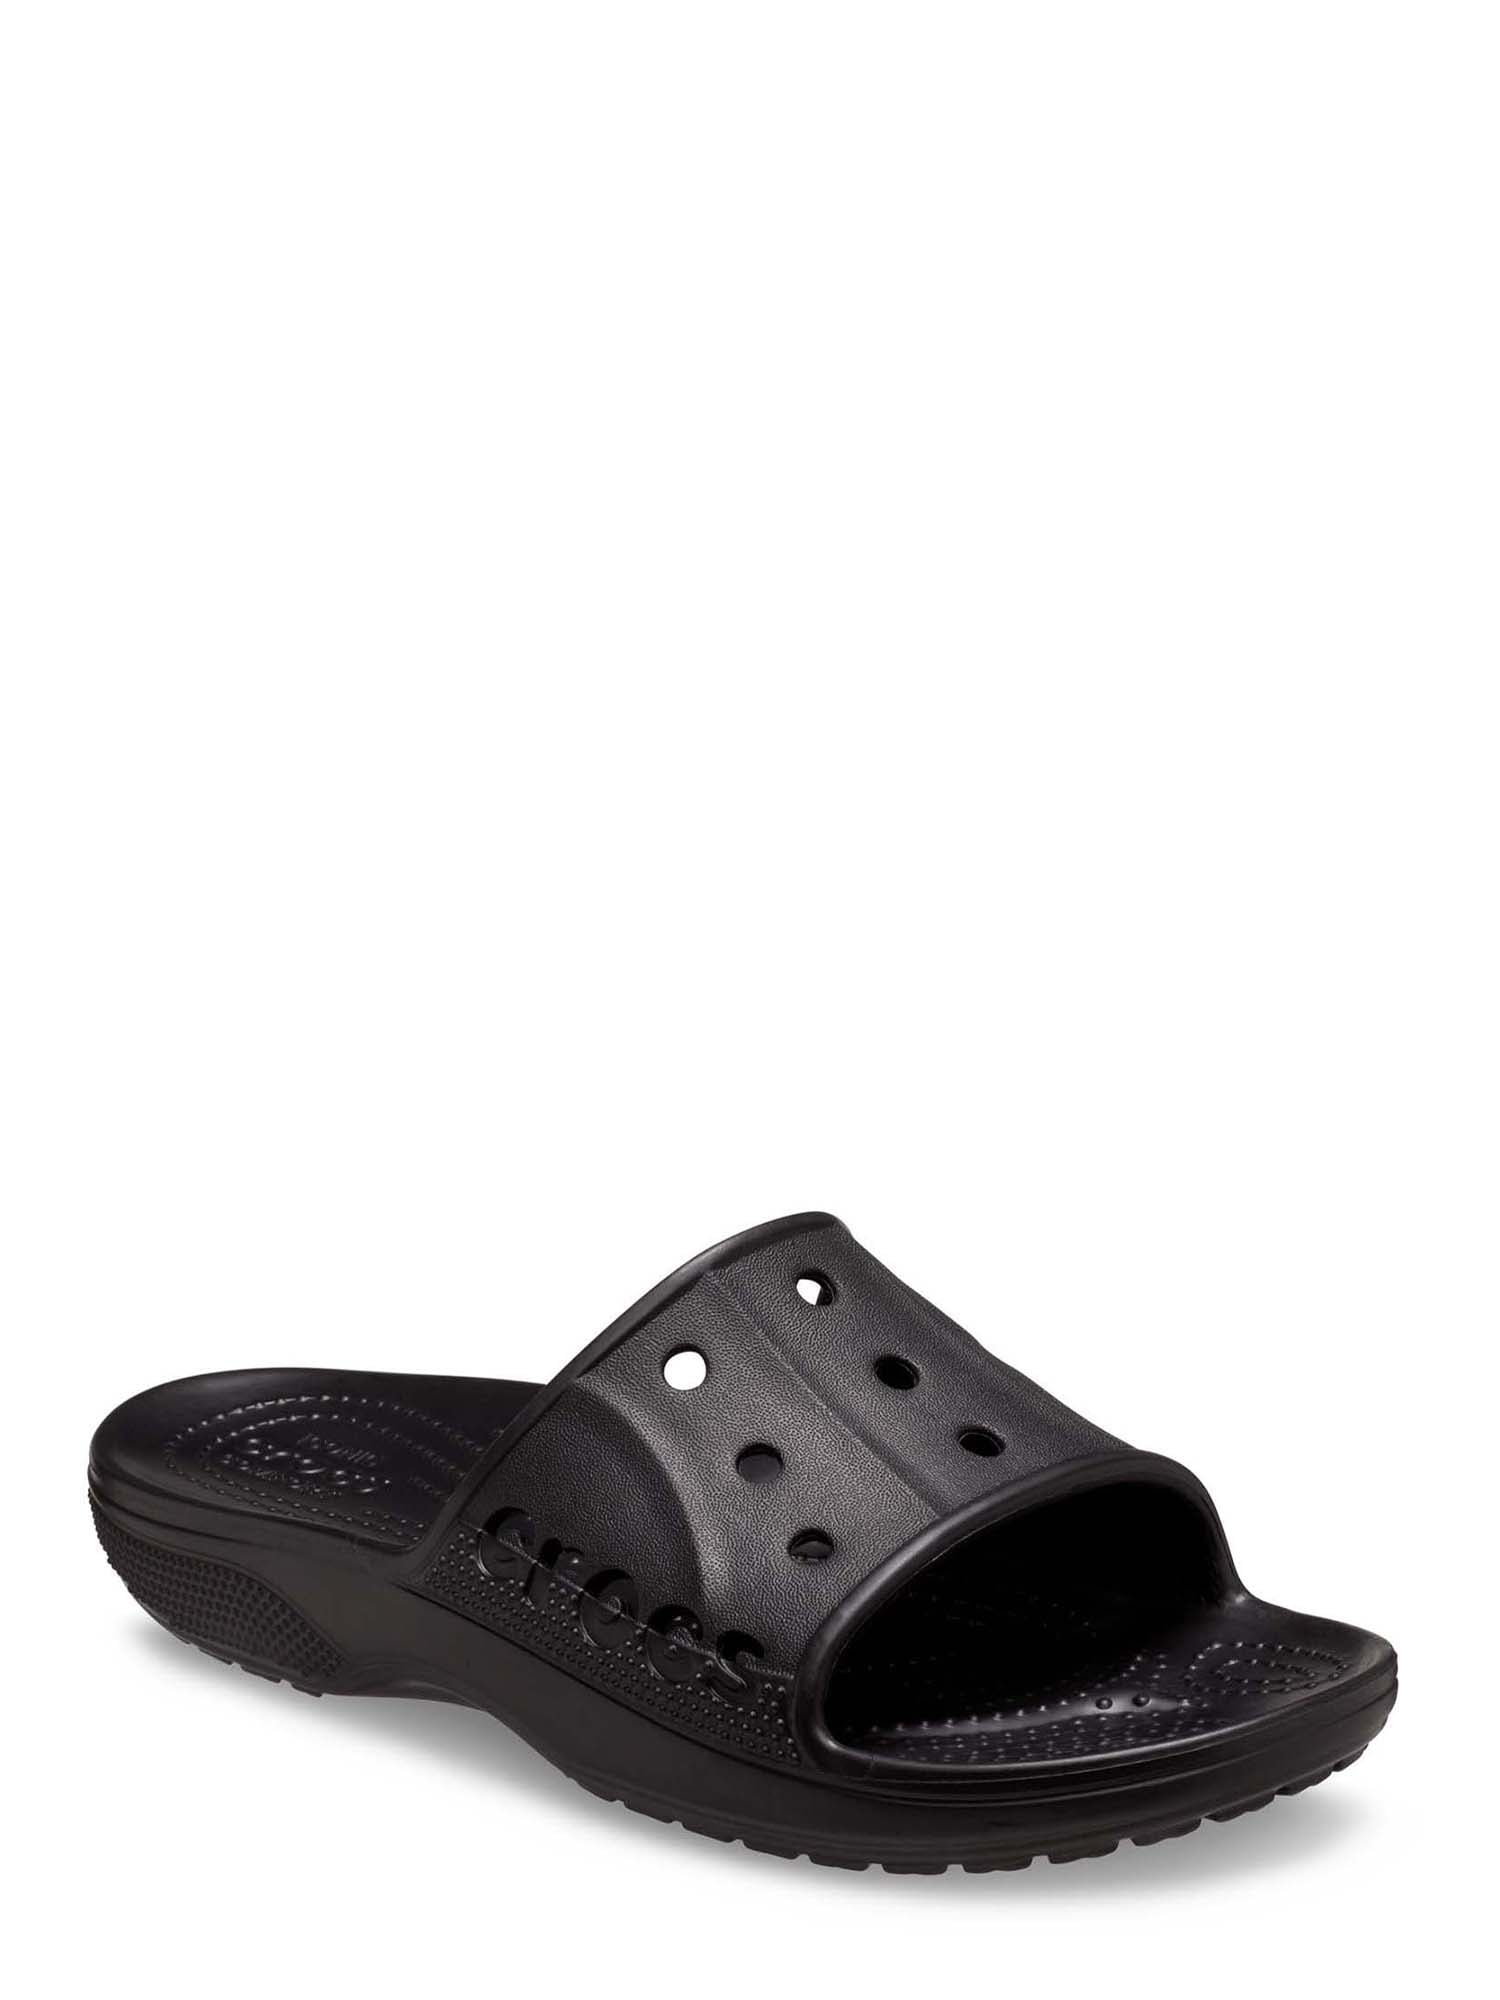 Crocs Men’s and Women’s Unisex Baya II Slide Sandals - Walmart.com